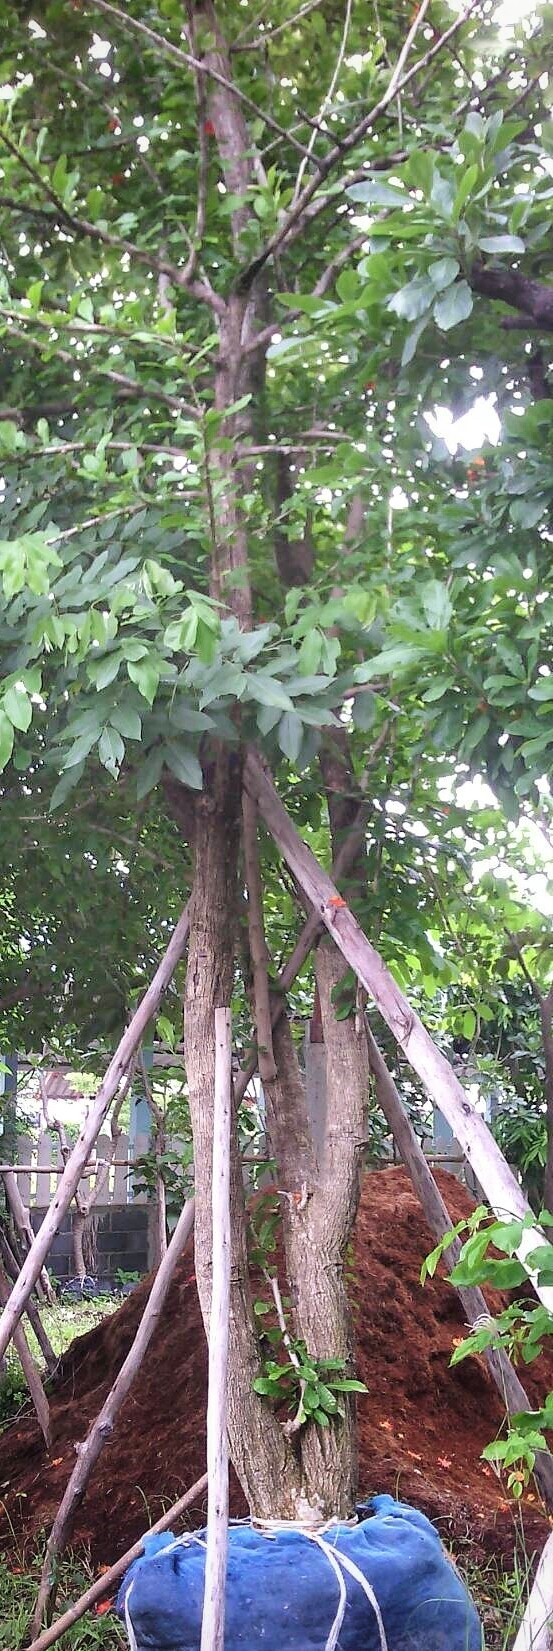 ต้นน้ำเต้าอินเดีย | ลพบุรีไม้ล้อม/บ่อแก้วพันธุ์ไม้ - เมืองลพบุรี ลพบุรี